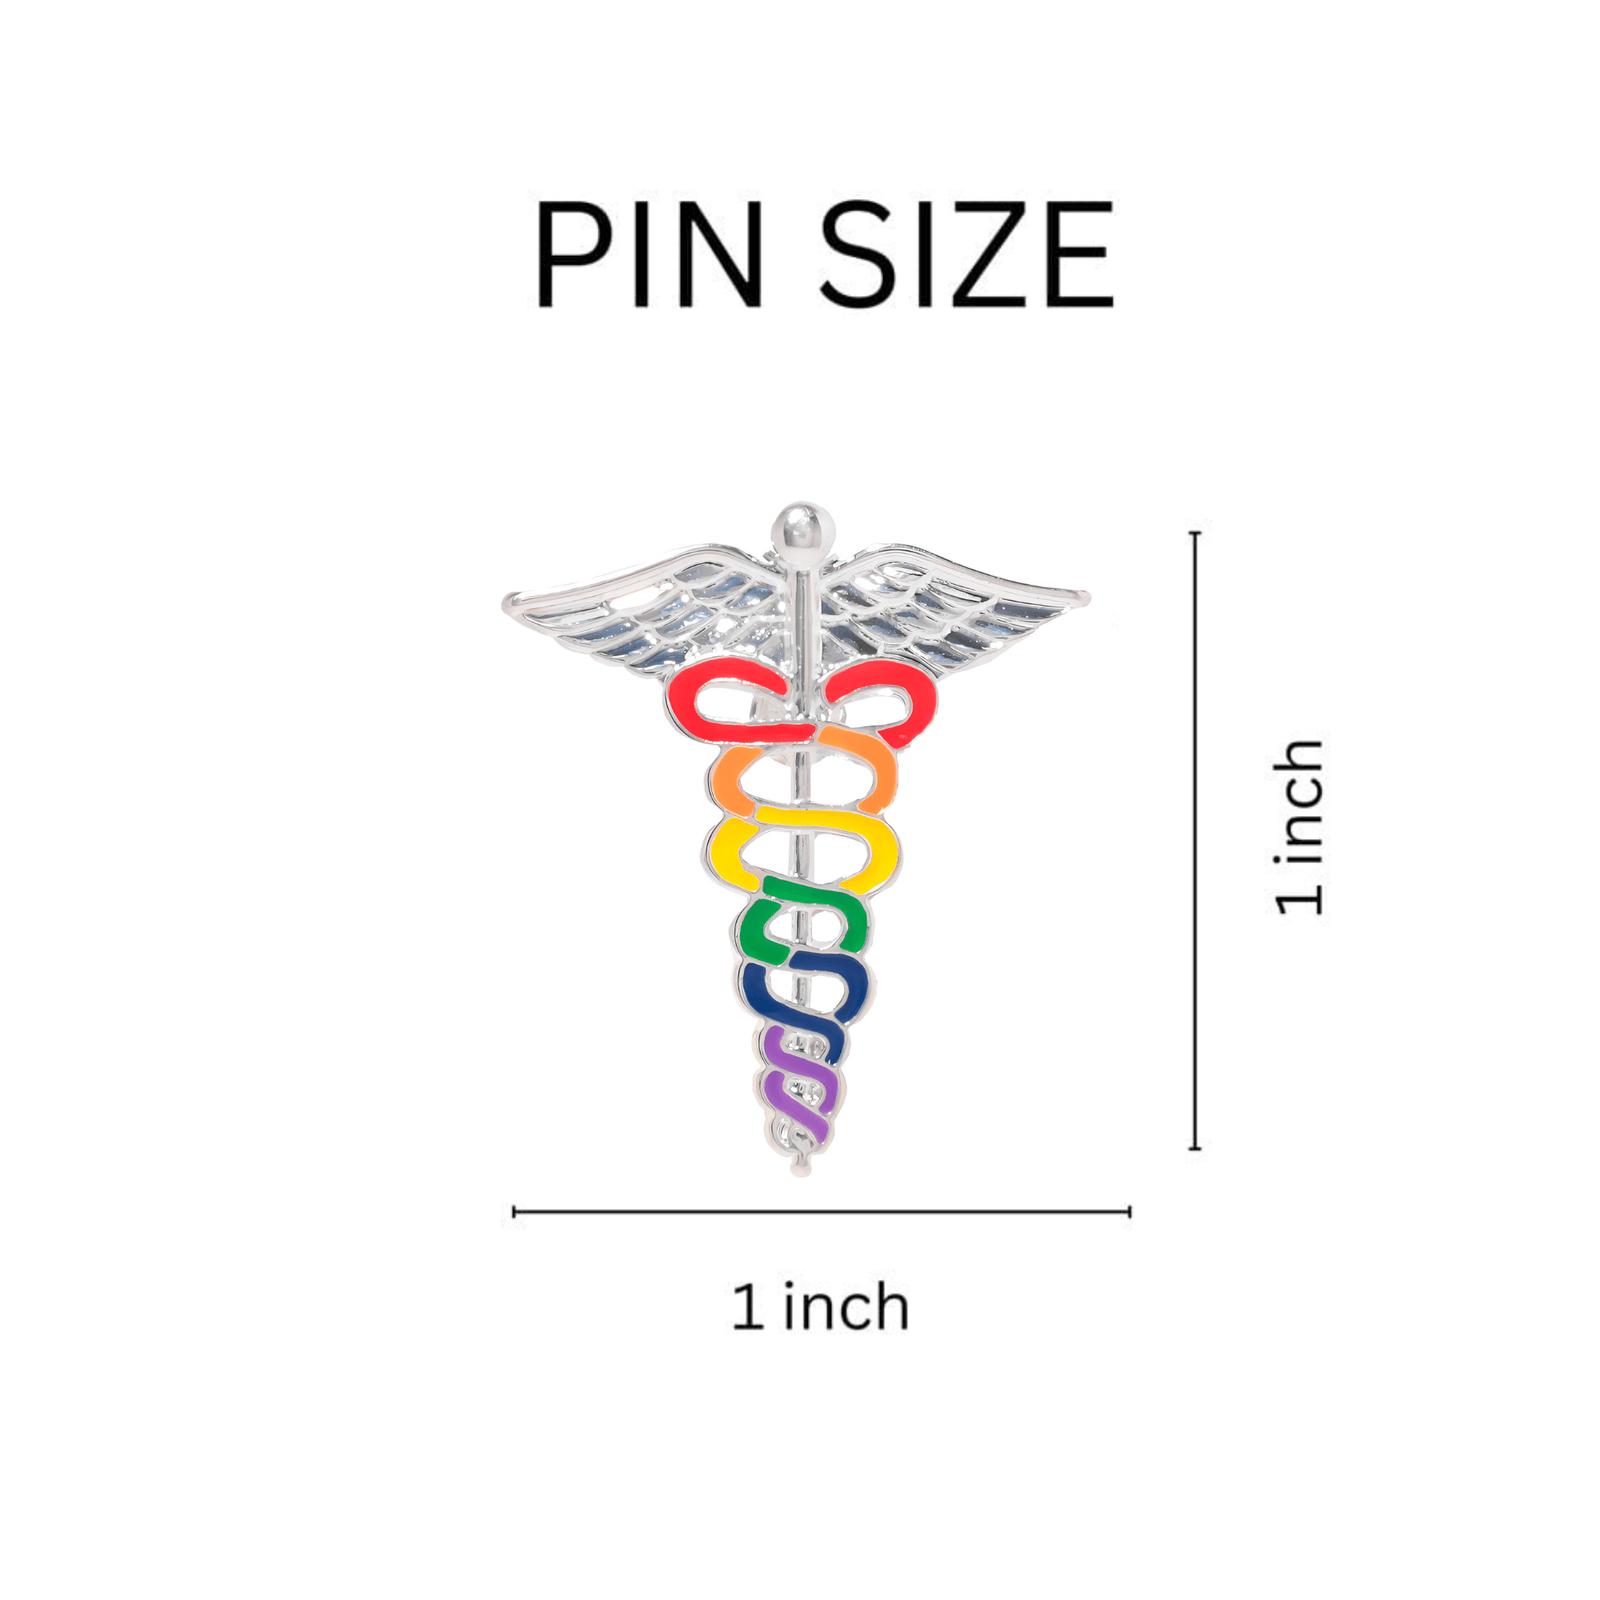 Shop Pride Pins – Rainbow, Pronoun & Quasar Flag Designs